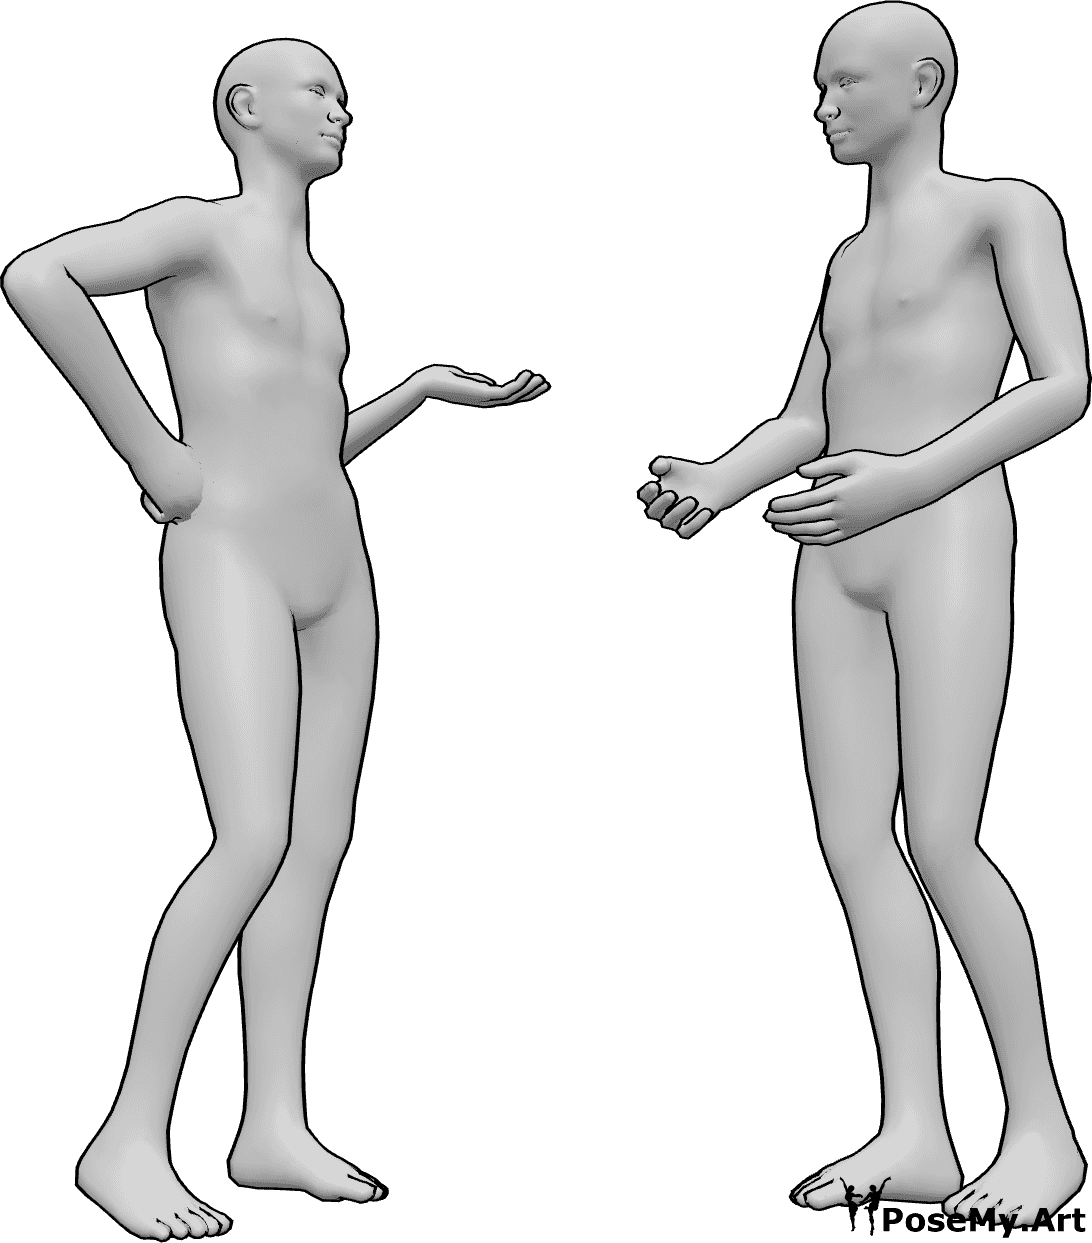 Posen-Referenz- Männchen stehend in Gesprächsposition - Zwei Männer stehen und unterhalten sich, ein lockeres Gespräch